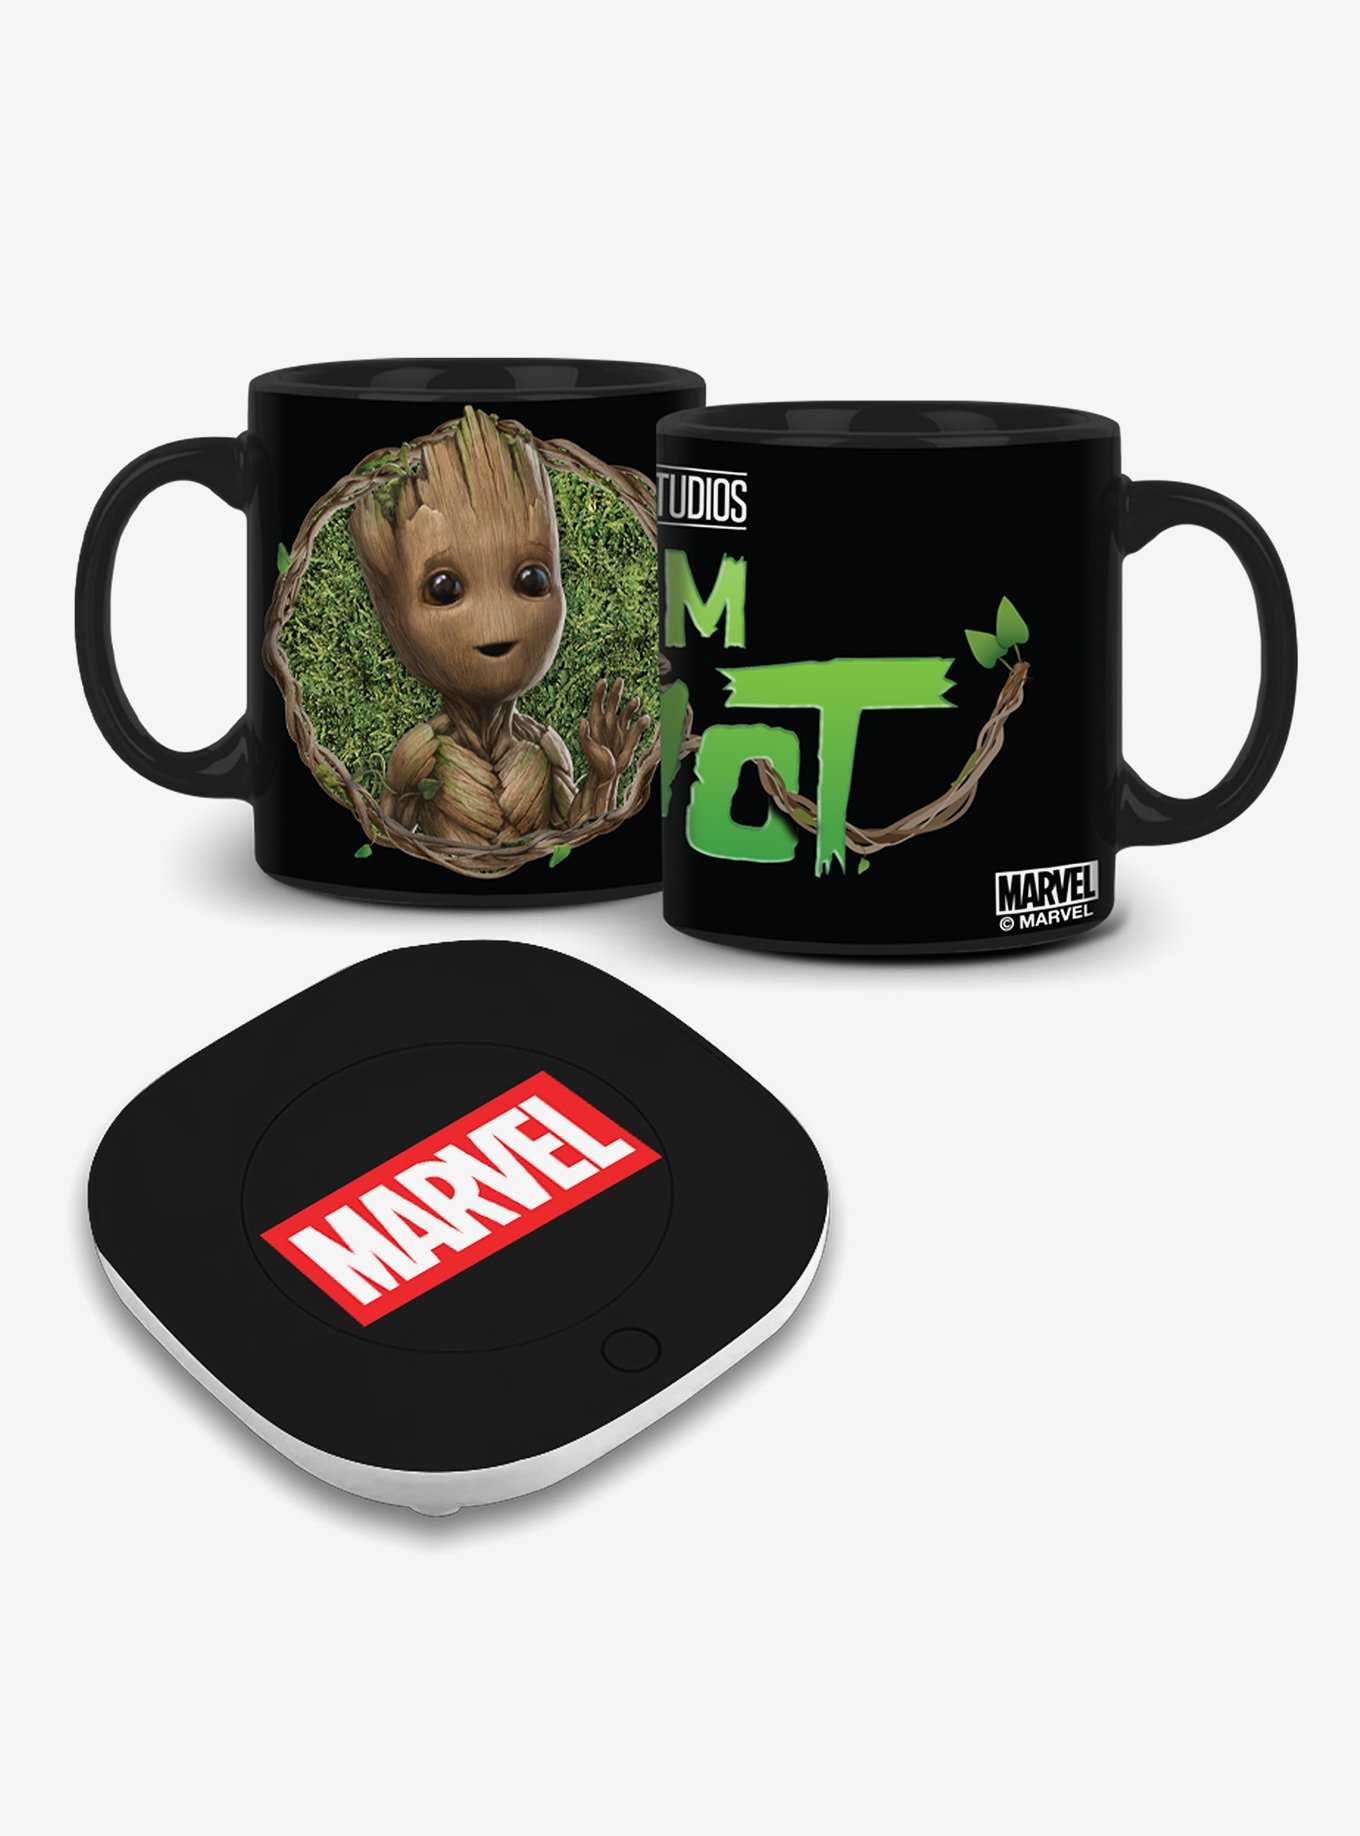 Marvel Heroes Personalized Mug